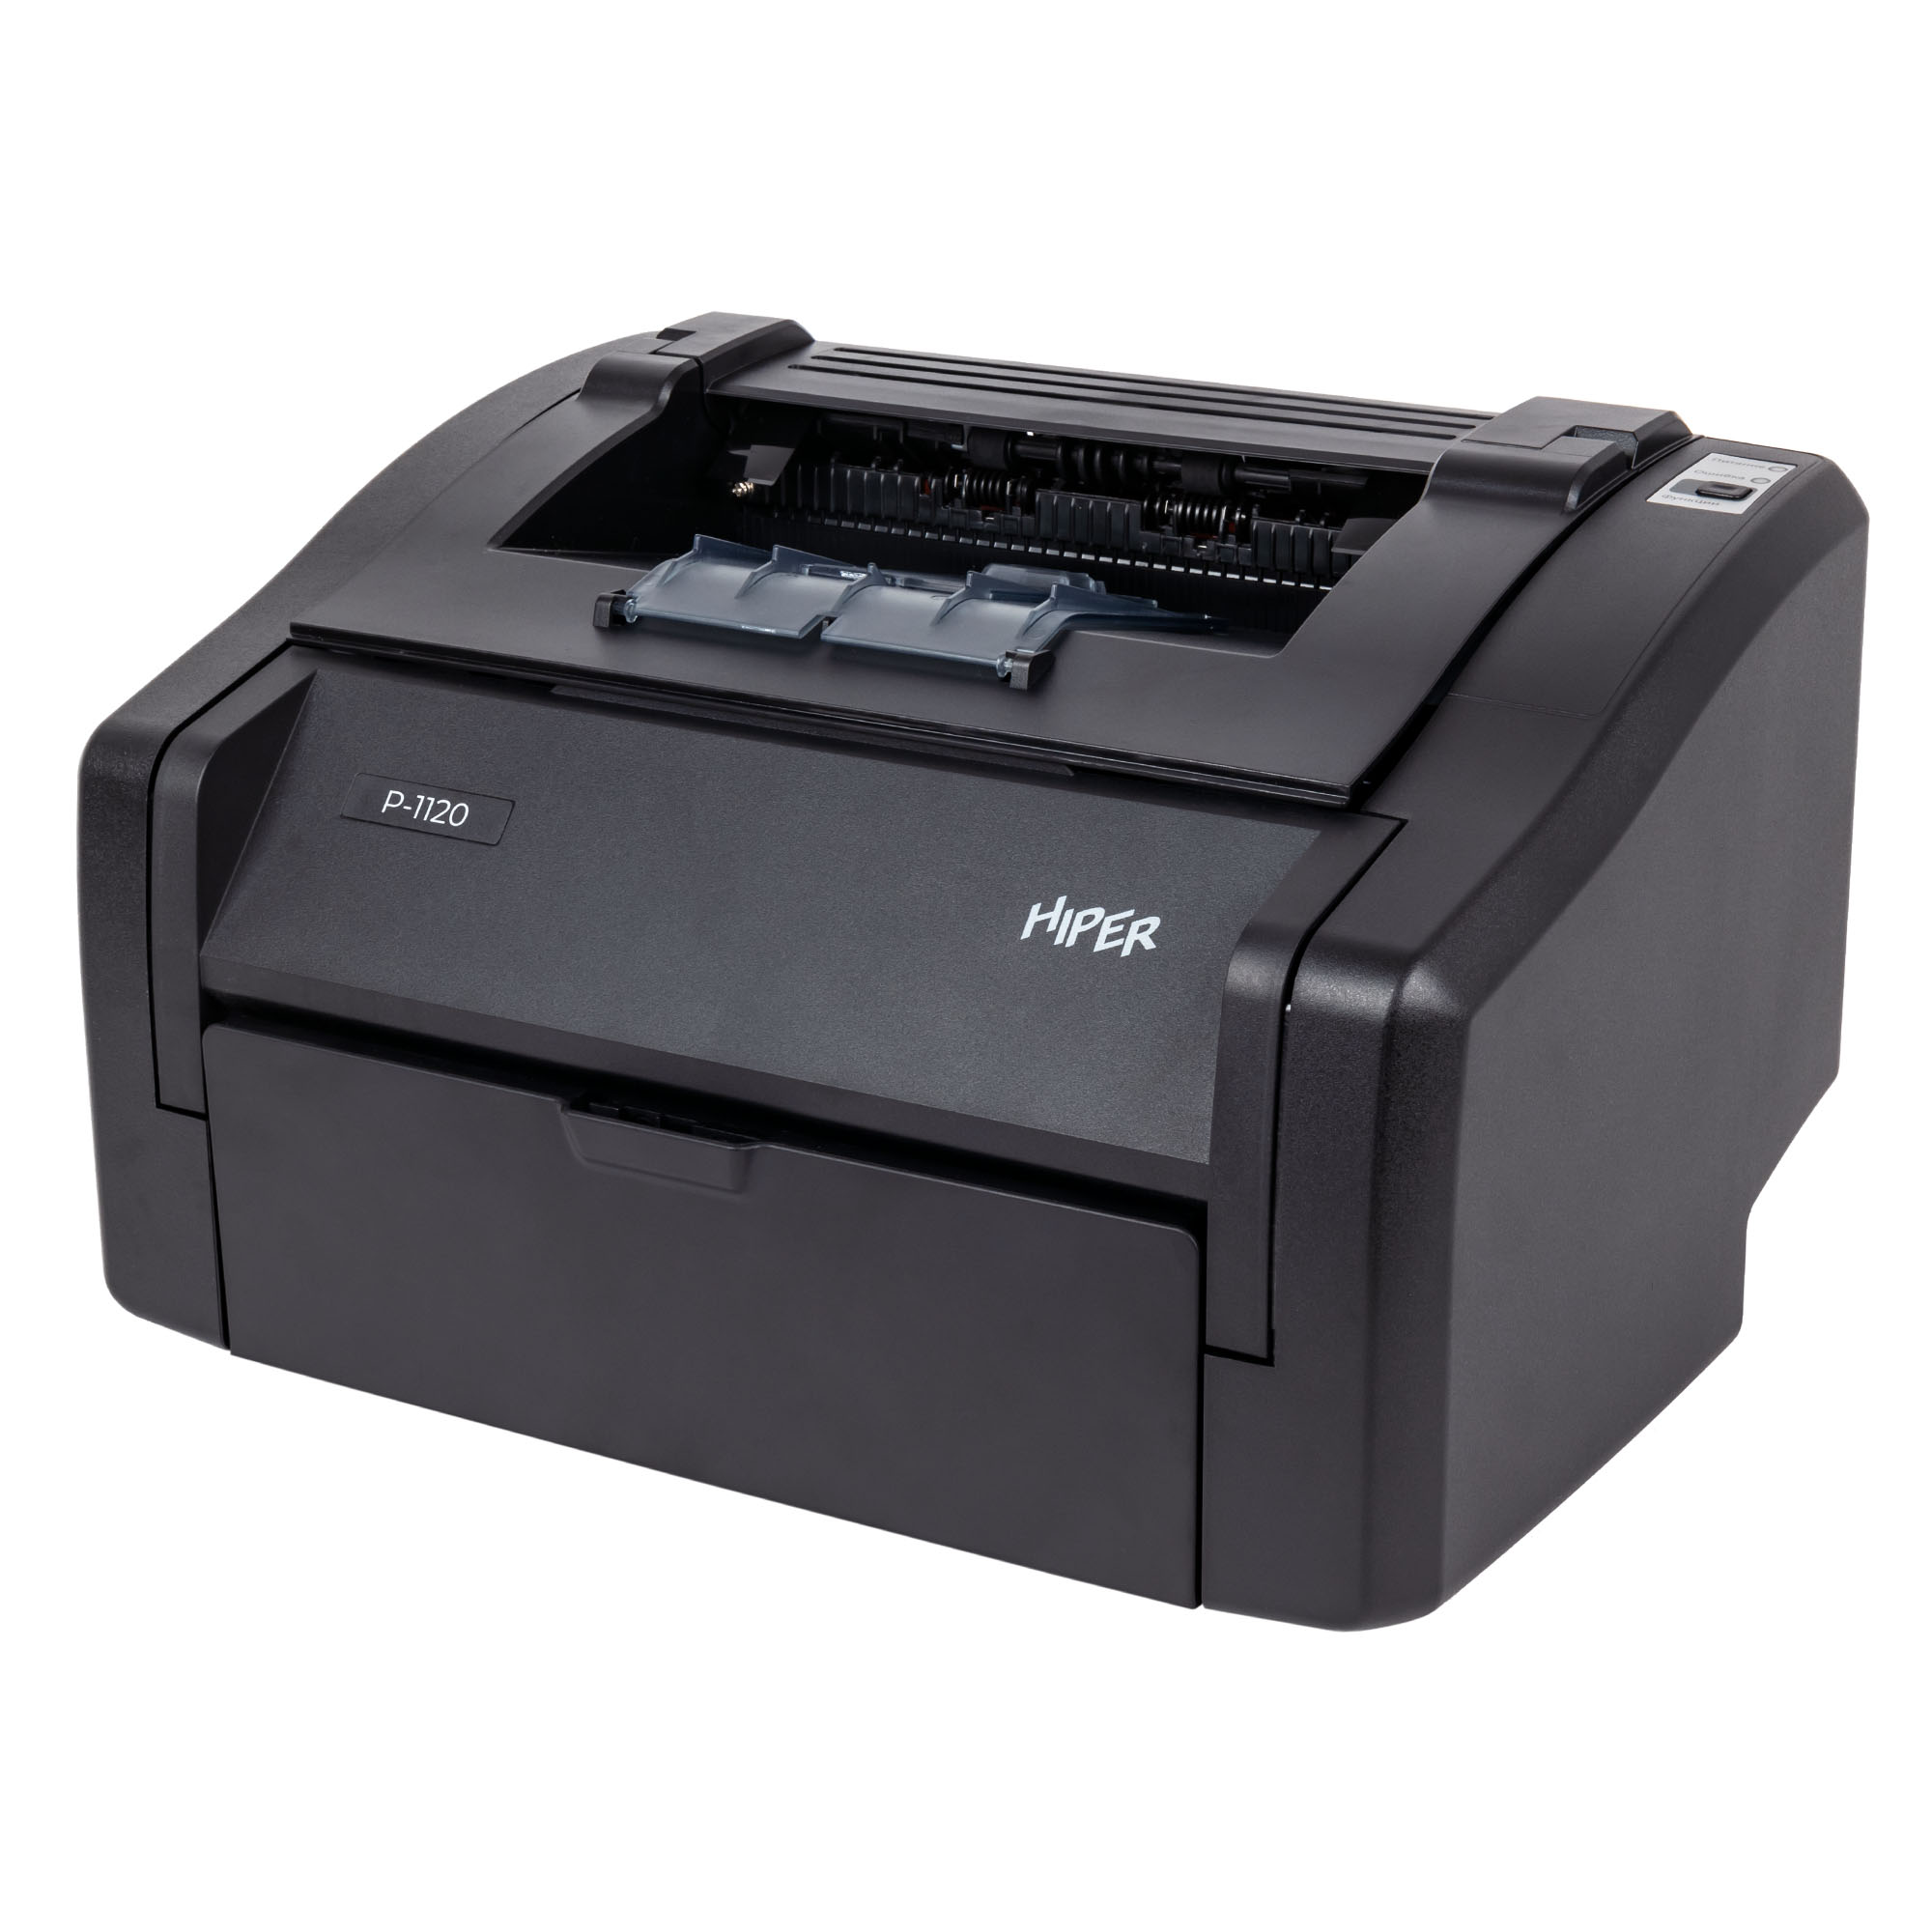 Принтер лазерный Hiper P-1120, A4, ч/б, 24стр/мин (A4 ч/б), 600x600 dpi, USB, черный (P-1120 ( BL ))